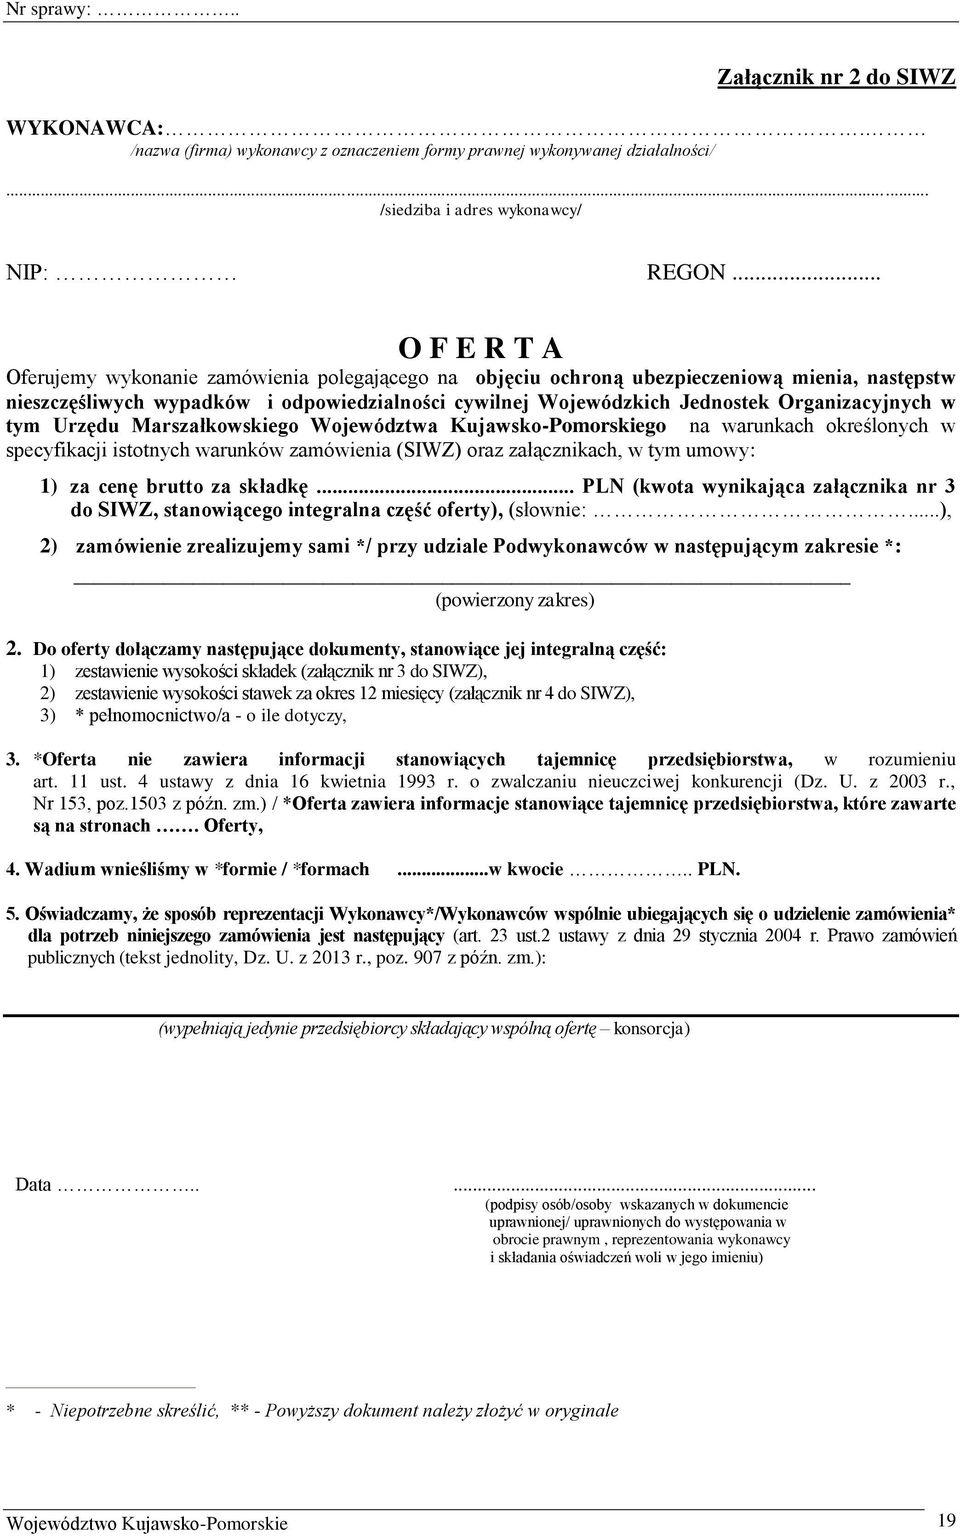 Organizacyjnych w tym Urzędu Marszałkowskiego Województwa Kujawsko-Pomorskiego na warunkach określonych w specyfikacji istotnych warunków zamówienia (SIWZ) oraz załącznikach, w tym umowy: 1) za cenę